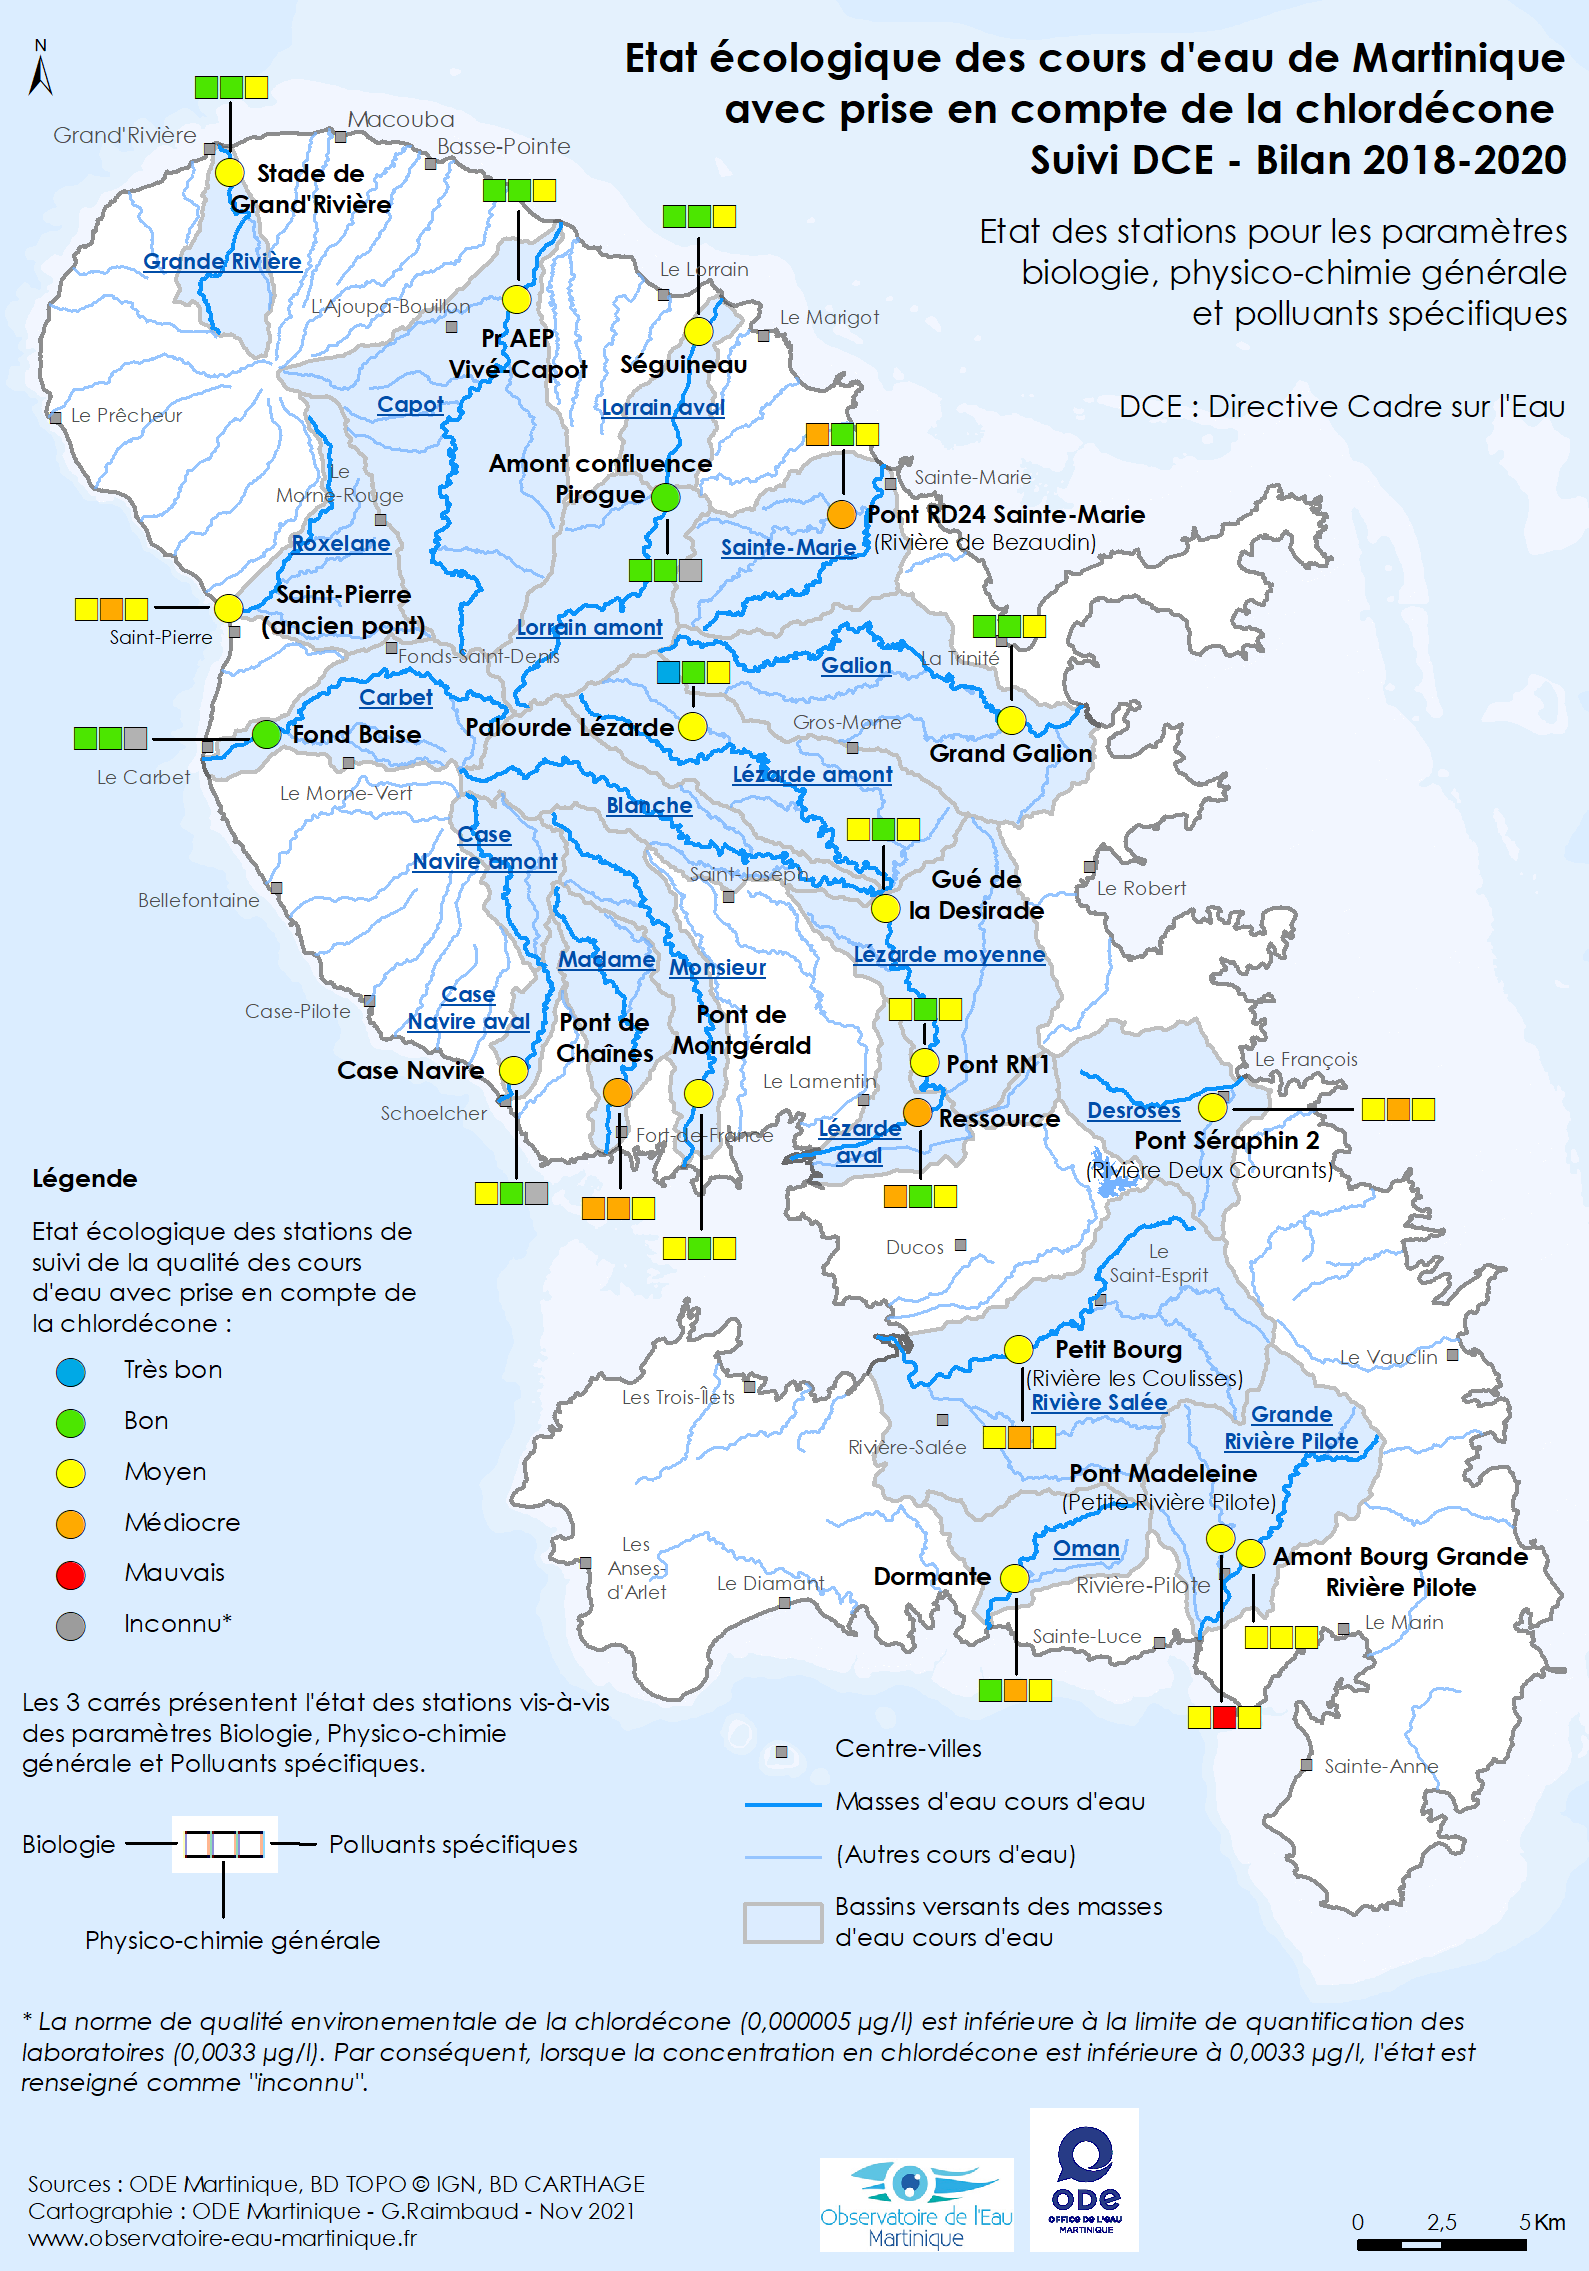 Etat écologique des cours d'eau de Martinique avec prise en compte de la chlordécone - Suivi DCE - Bilan 2018-2020